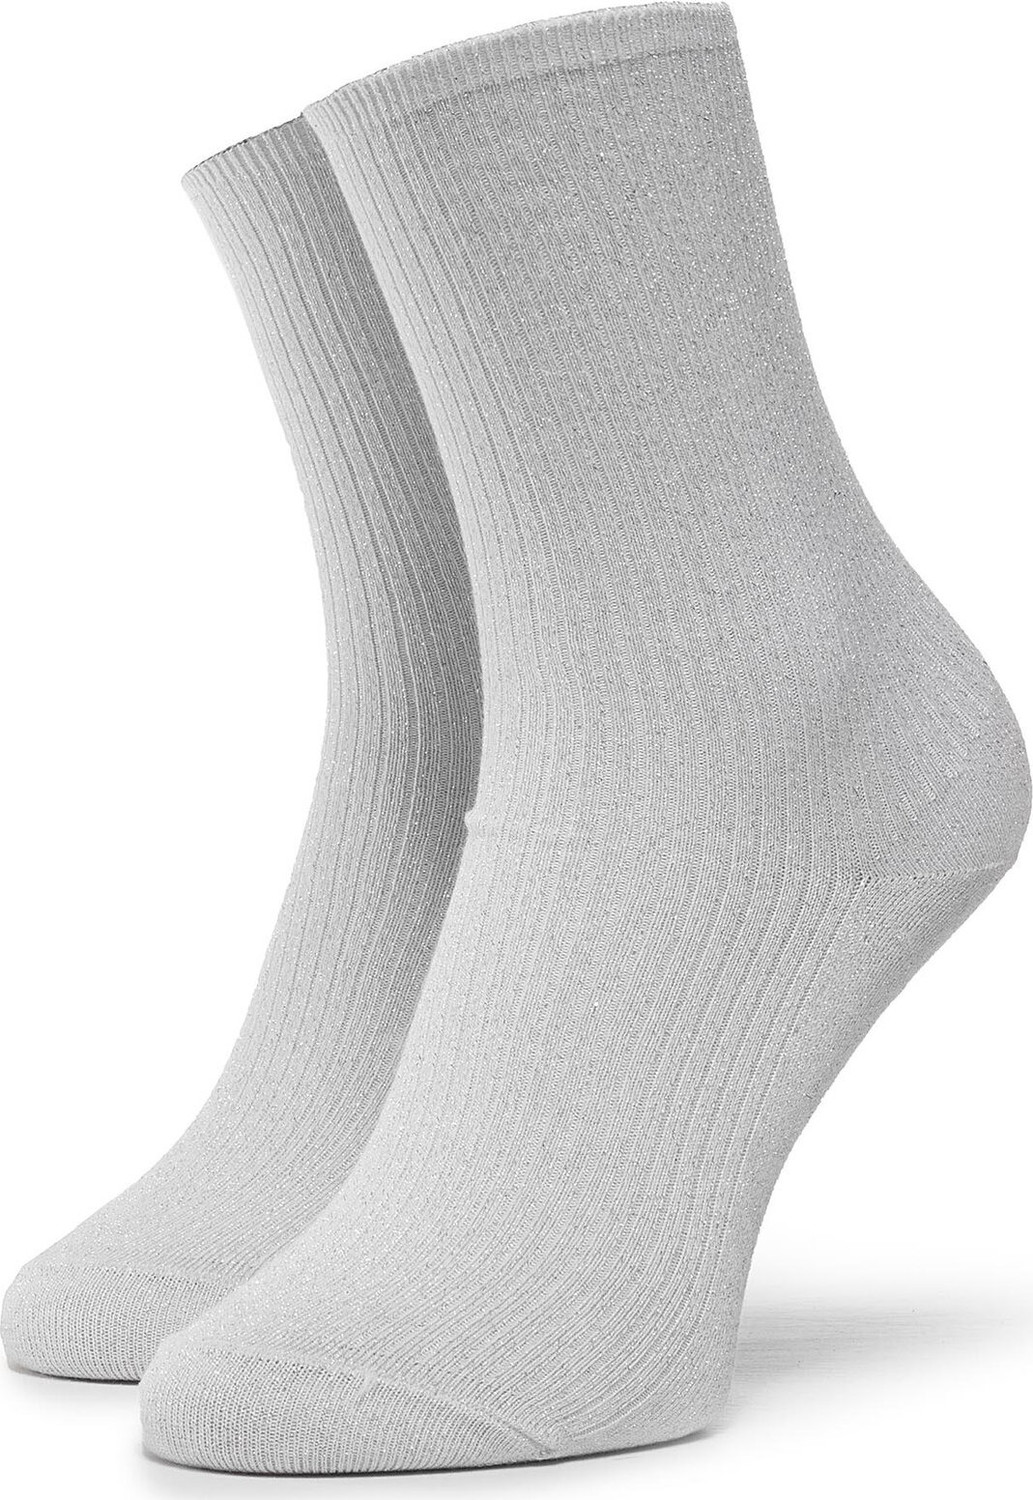 Dámské klasické ponožky Tommy Hilfiger 383016001 Silver 500